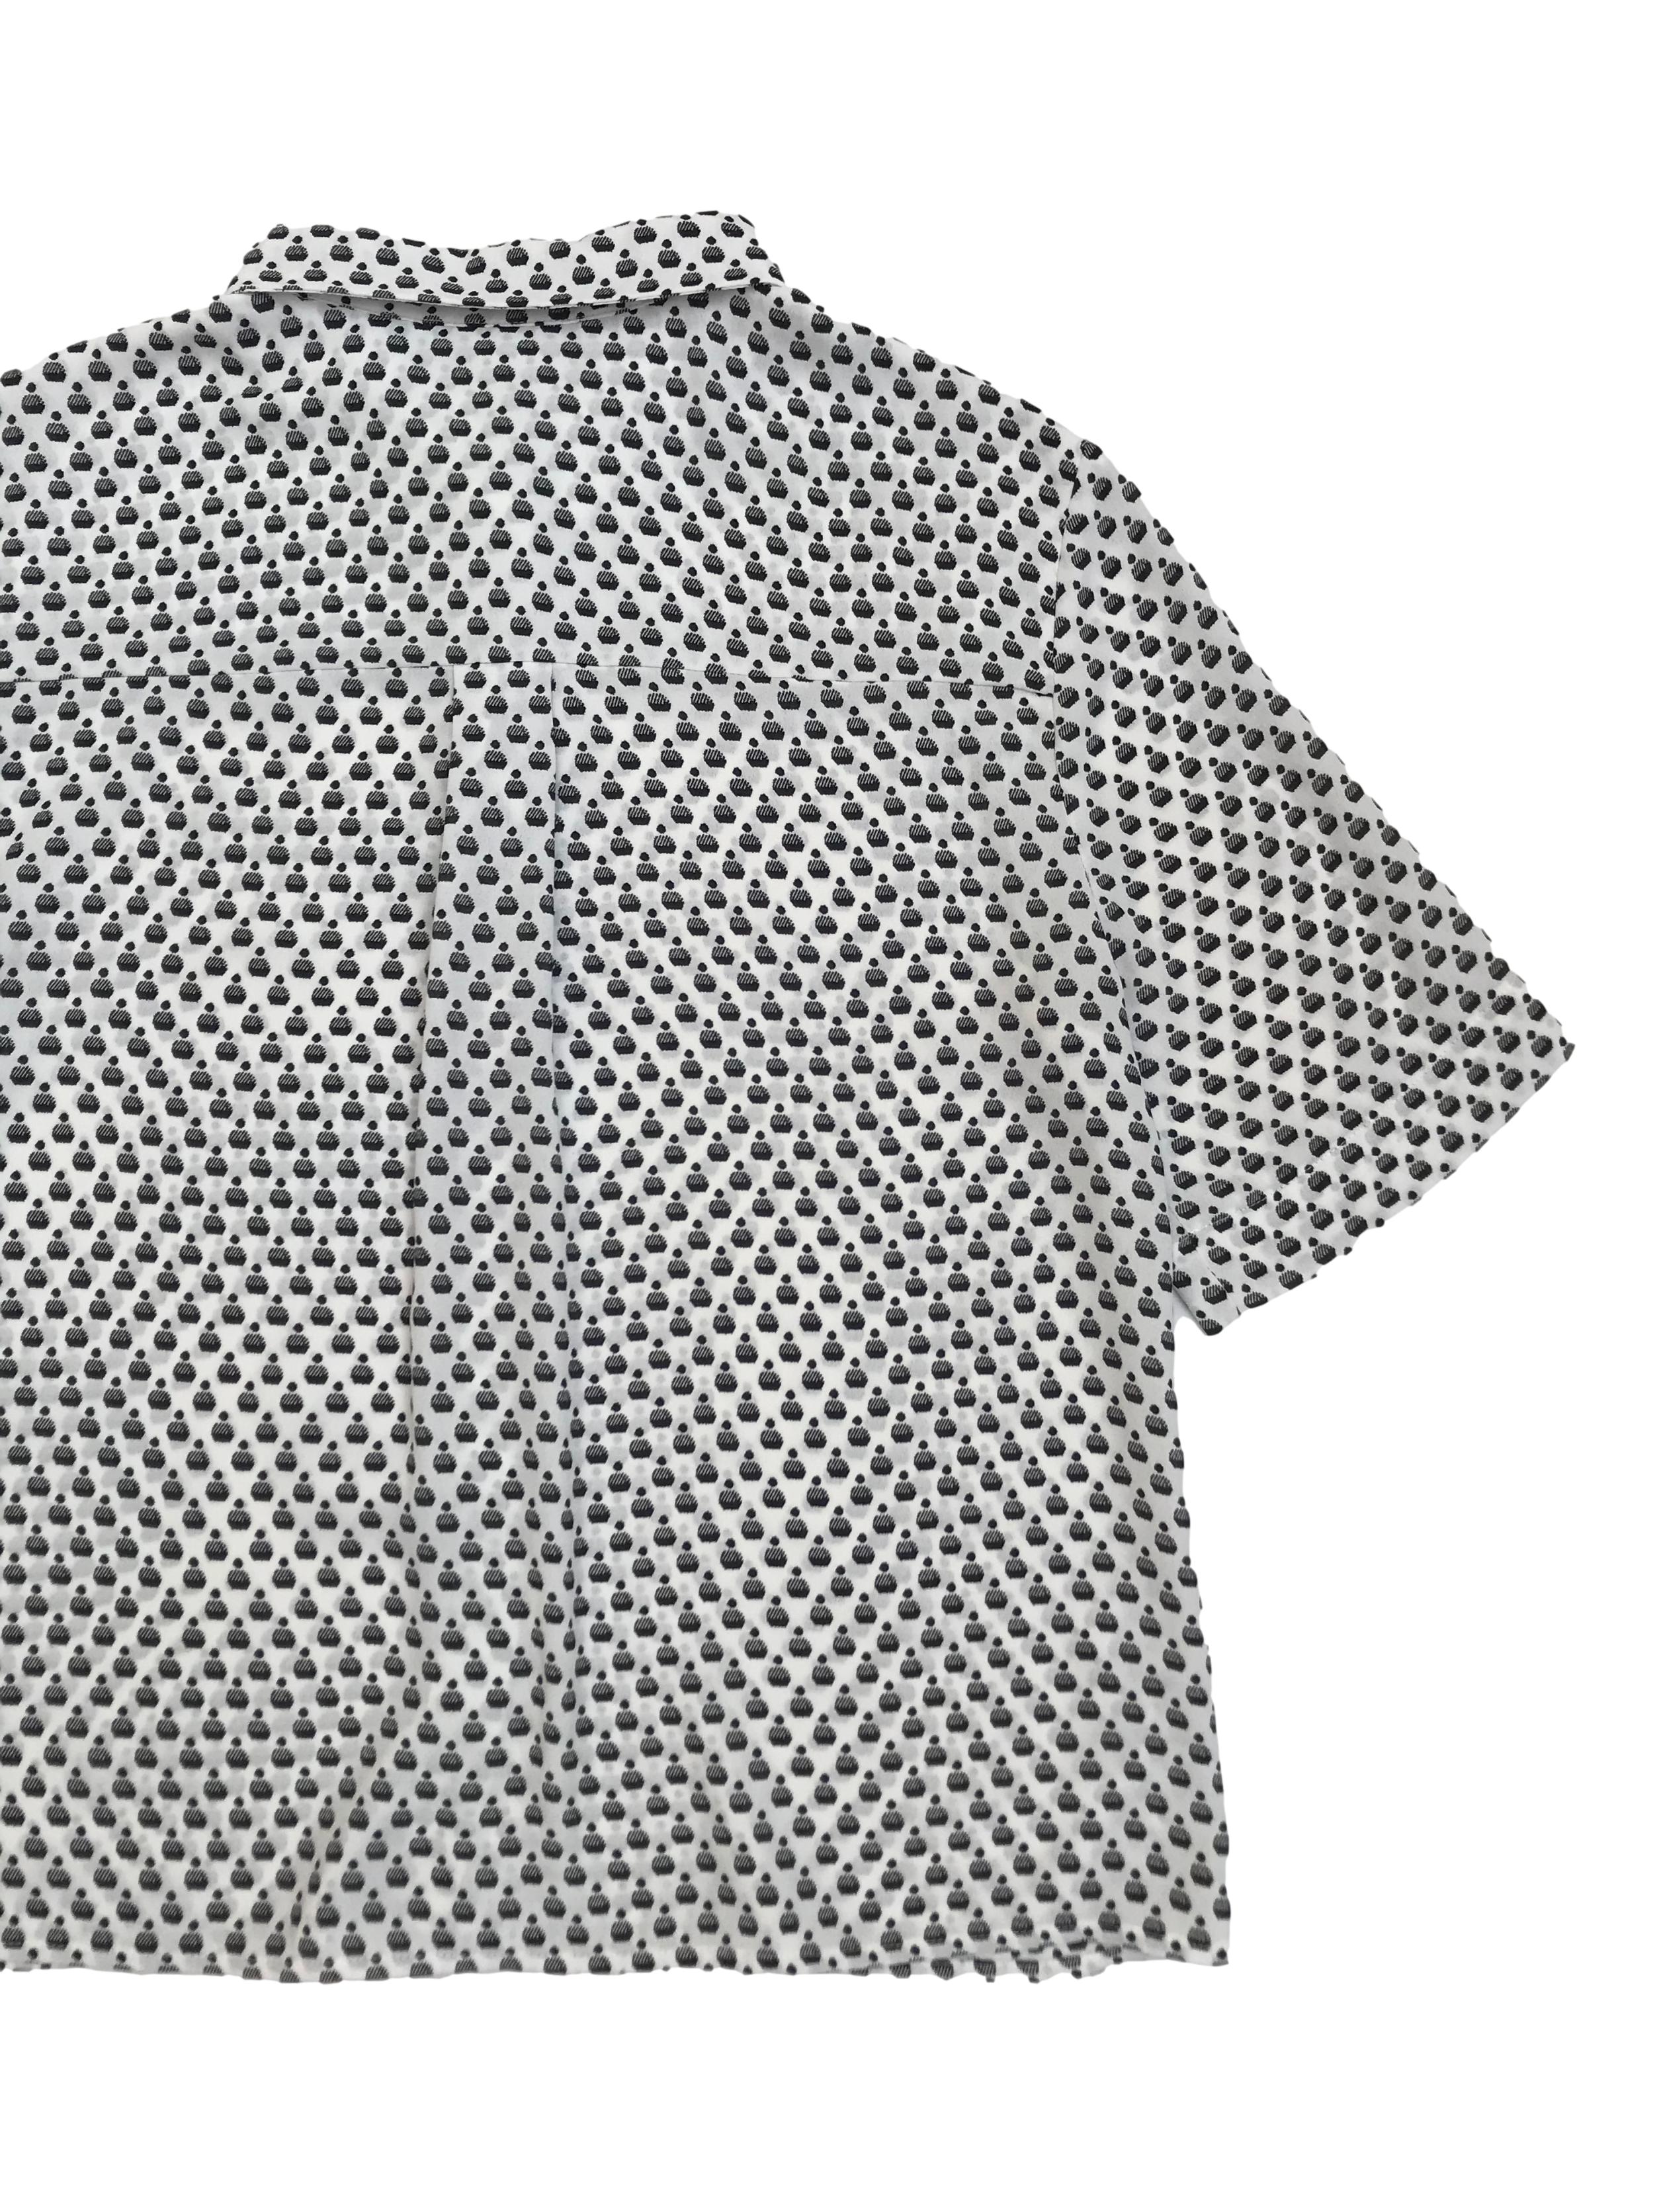 Blusa H&M tipo gasa blanca con print negro, corte oversize, camisera con canesú en la espalda. Largo 53cm